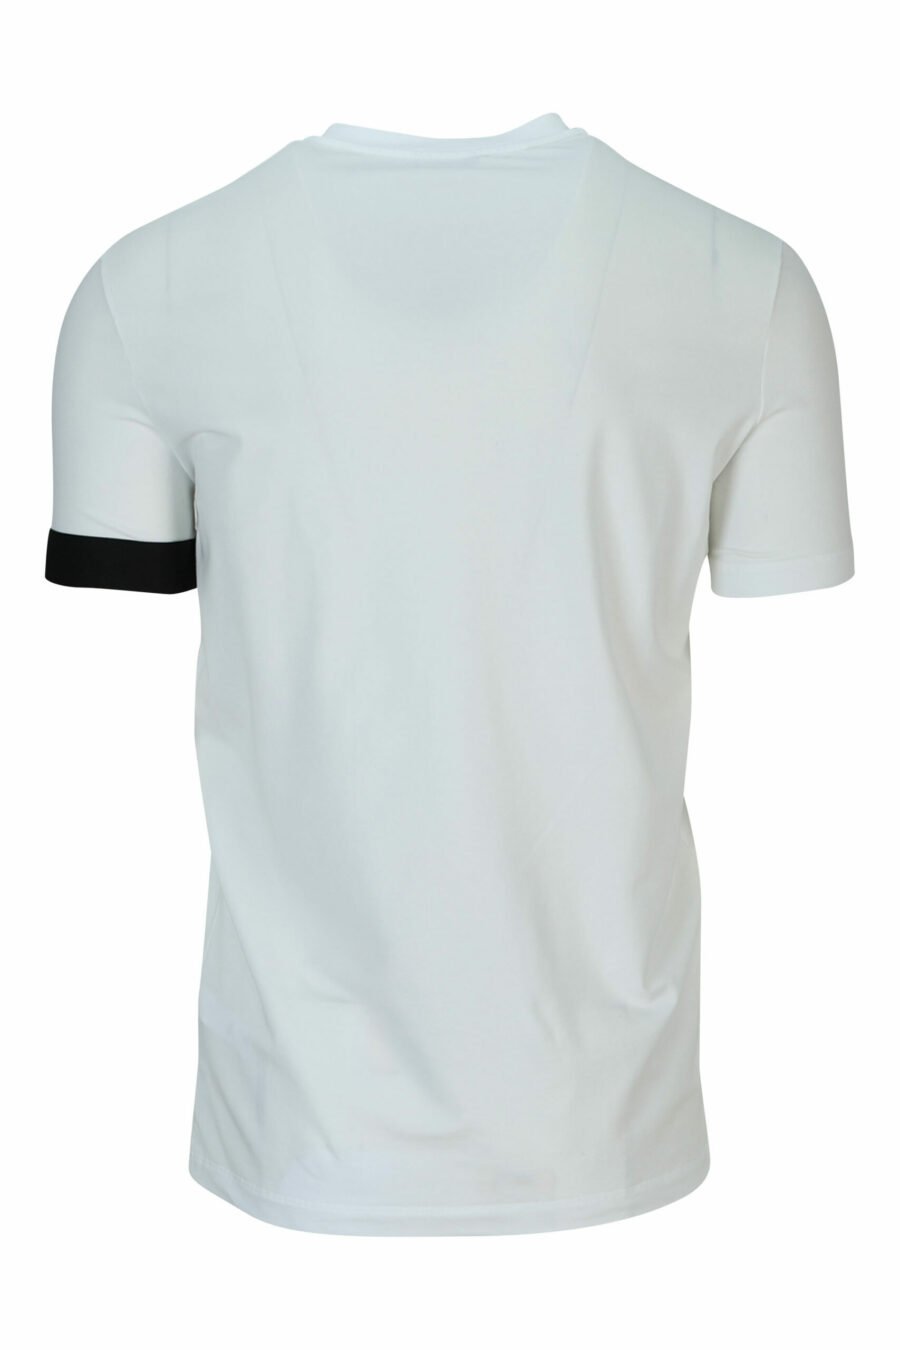 Weißes T-Shirt mit schwarzem Logo - 8032674767493 2 skaliert